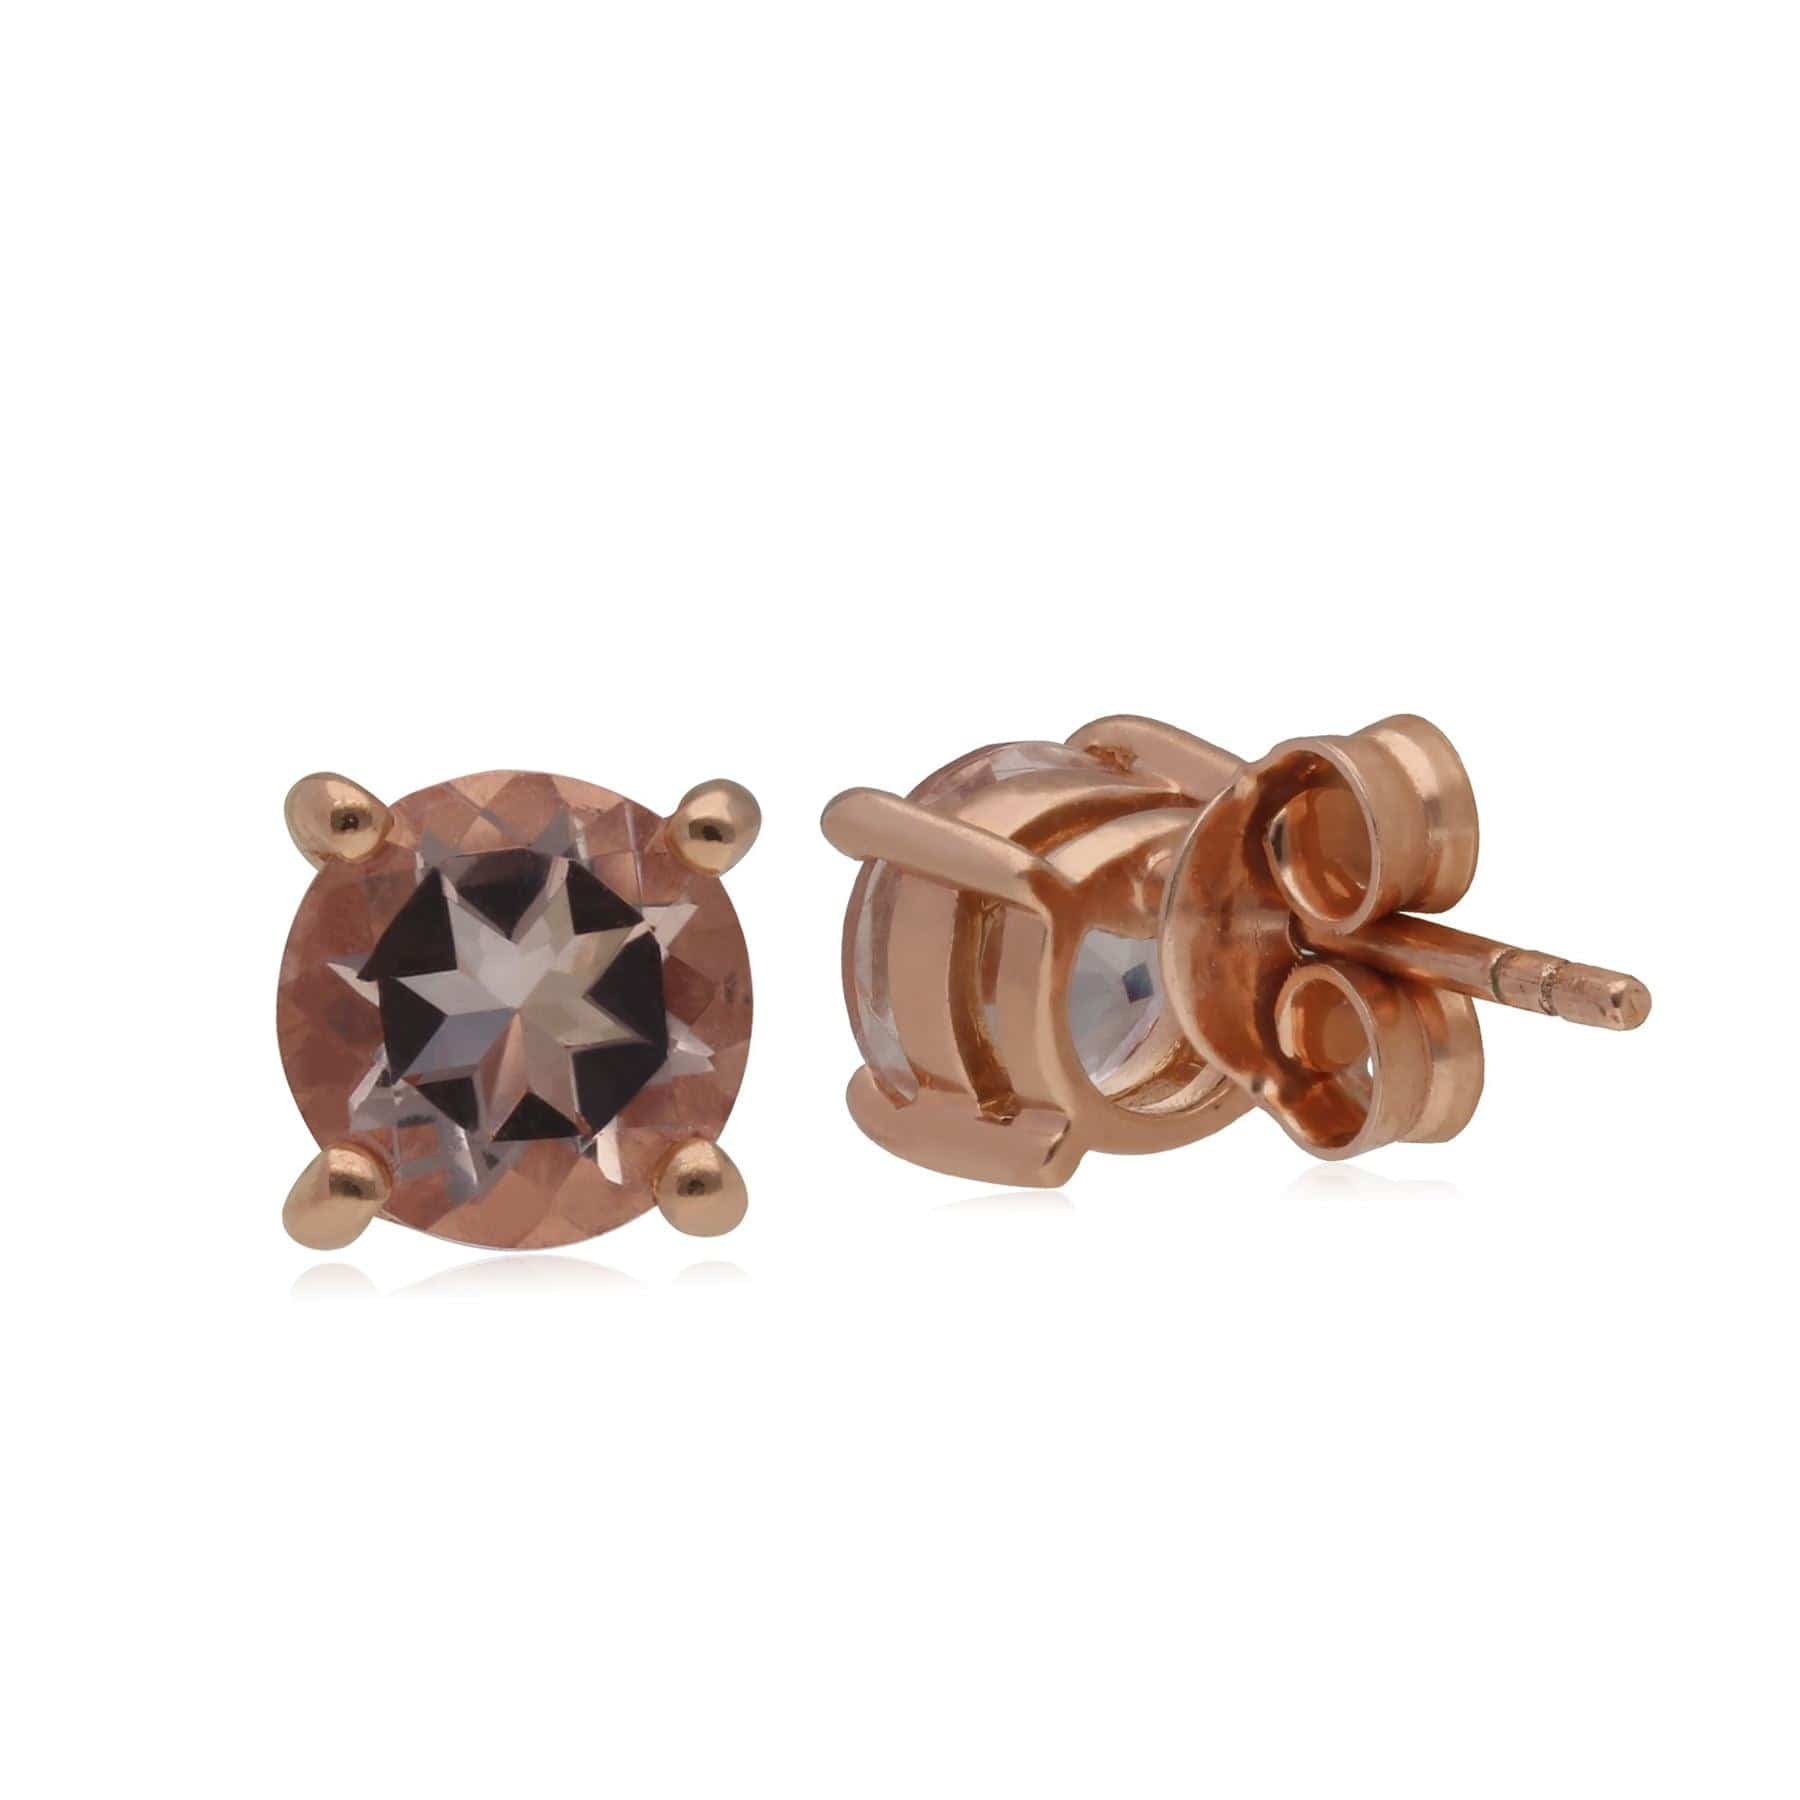 Kosmos Morganite Stud Earrings in 9ct Rose Gold - Gemondo